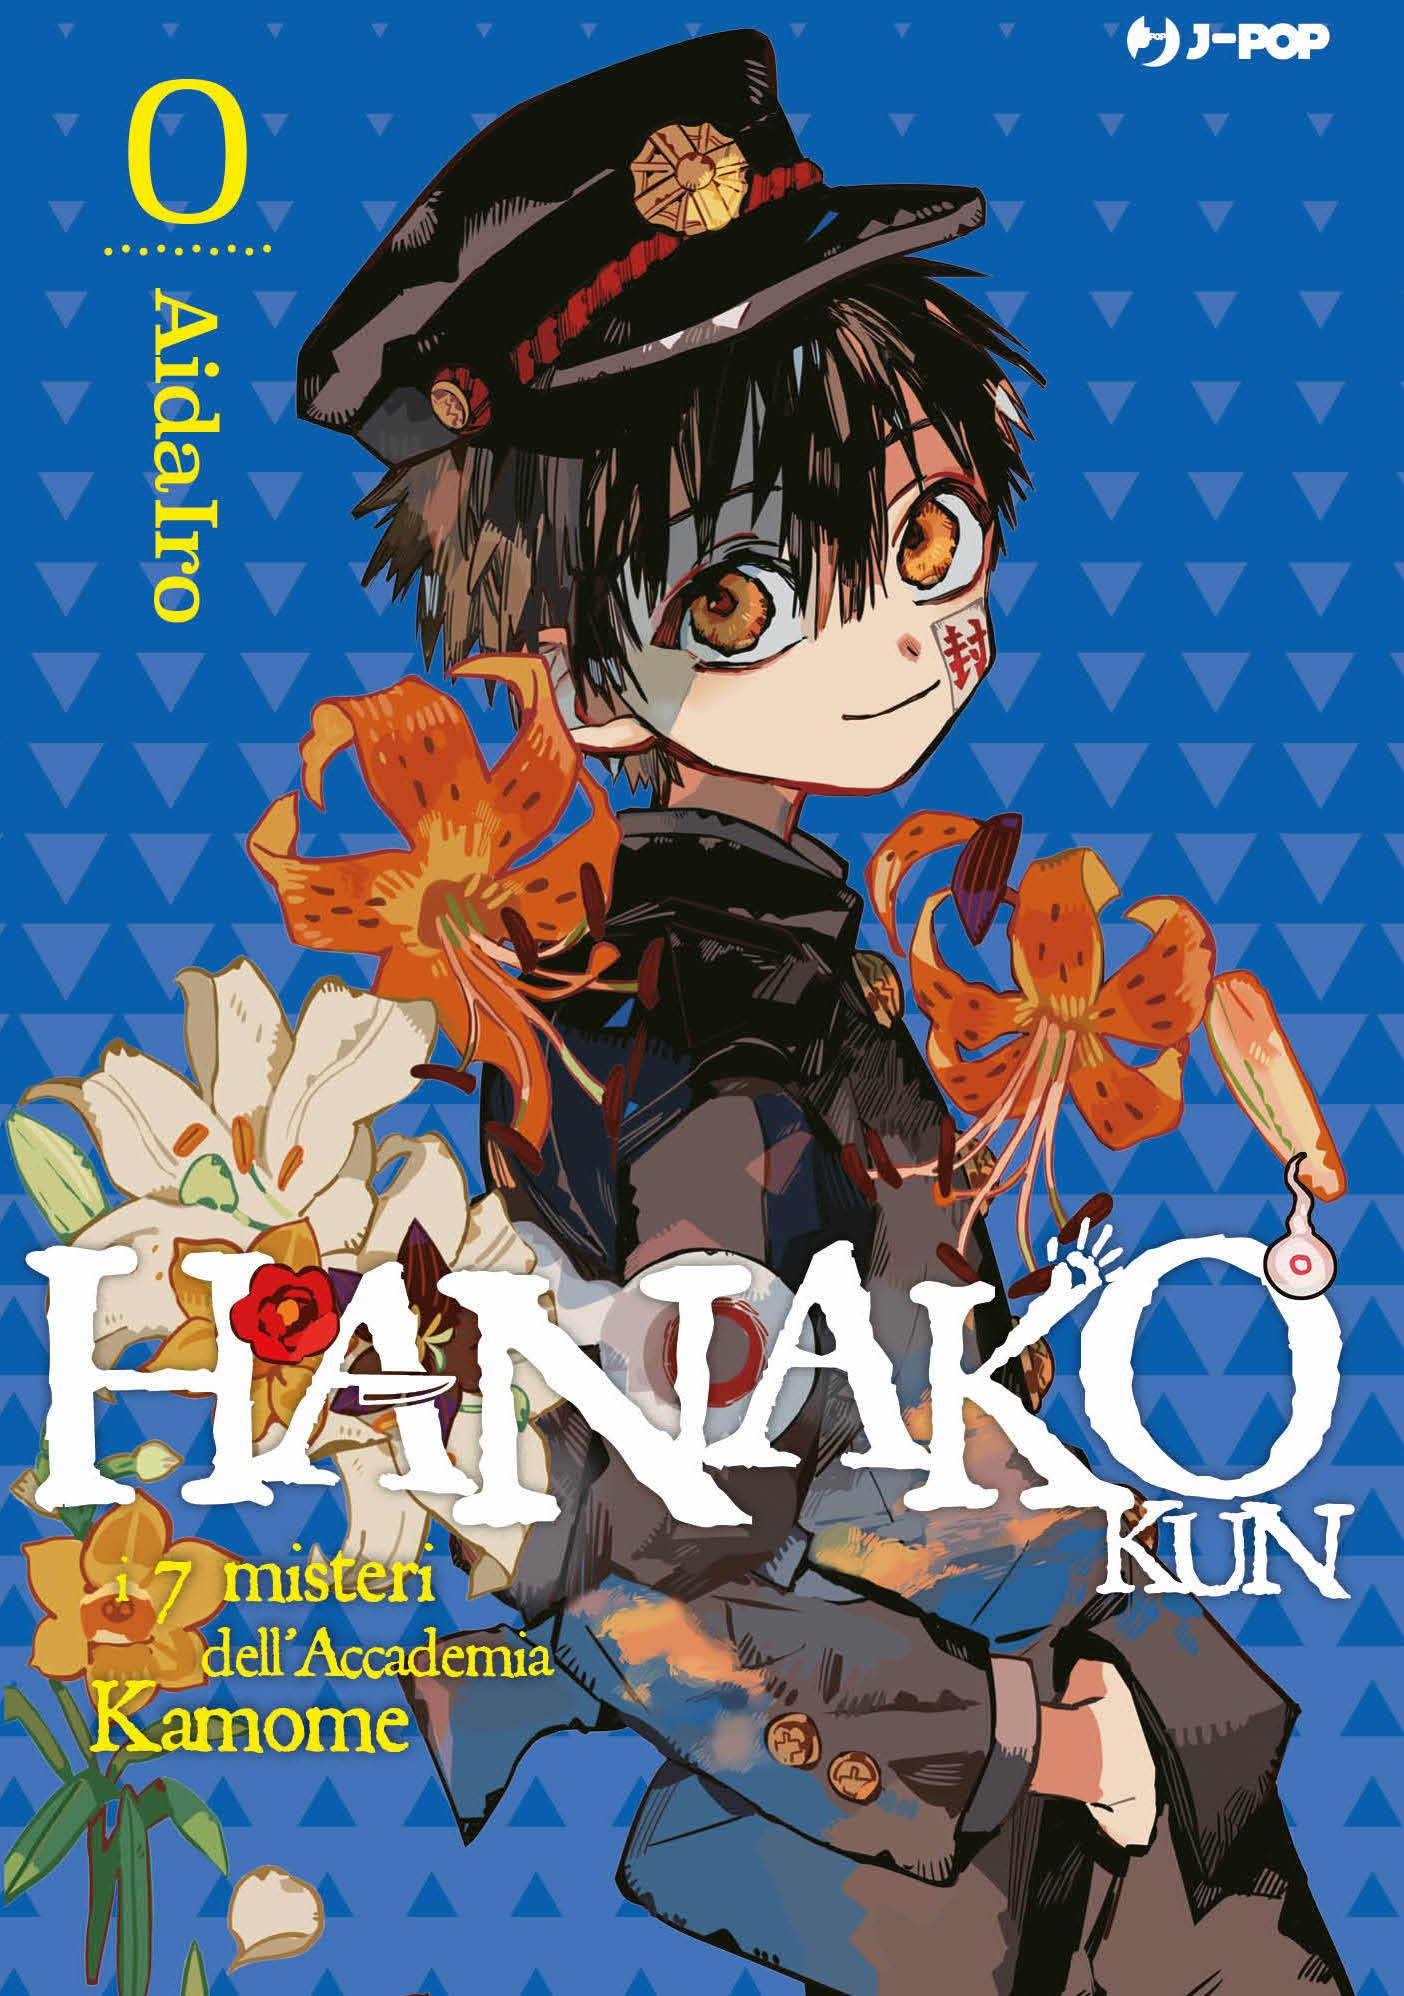 Hanako-kun – I sette misteri dell'Accademia Kamome vol. 0, tra le novità BD Edizioni J-Pop Manga di Febbraio 2022